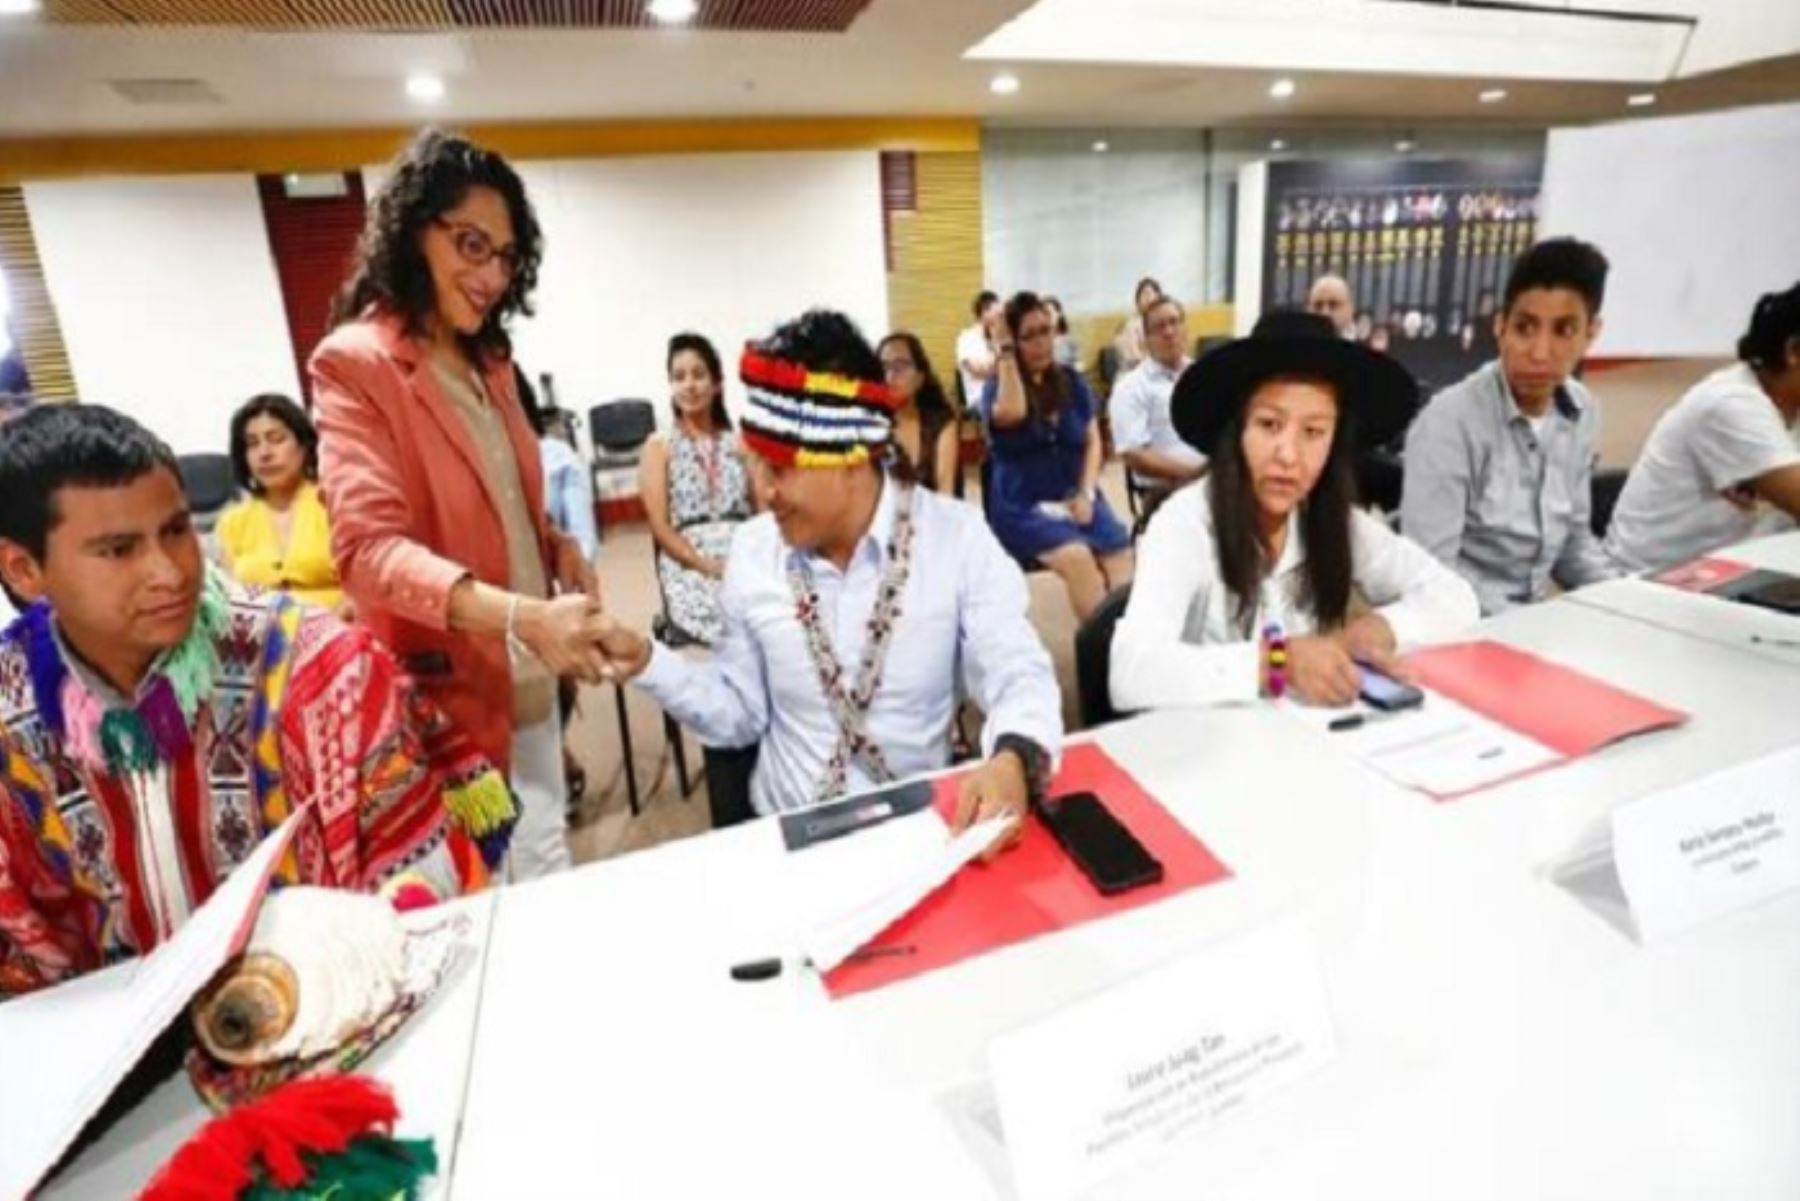 Participan representantes de organizaciones indígenas de Áncash, Loreto, Cusco, Madre de Dios, Ayacucho, Junín, Ucayali, Puno y San Martín.